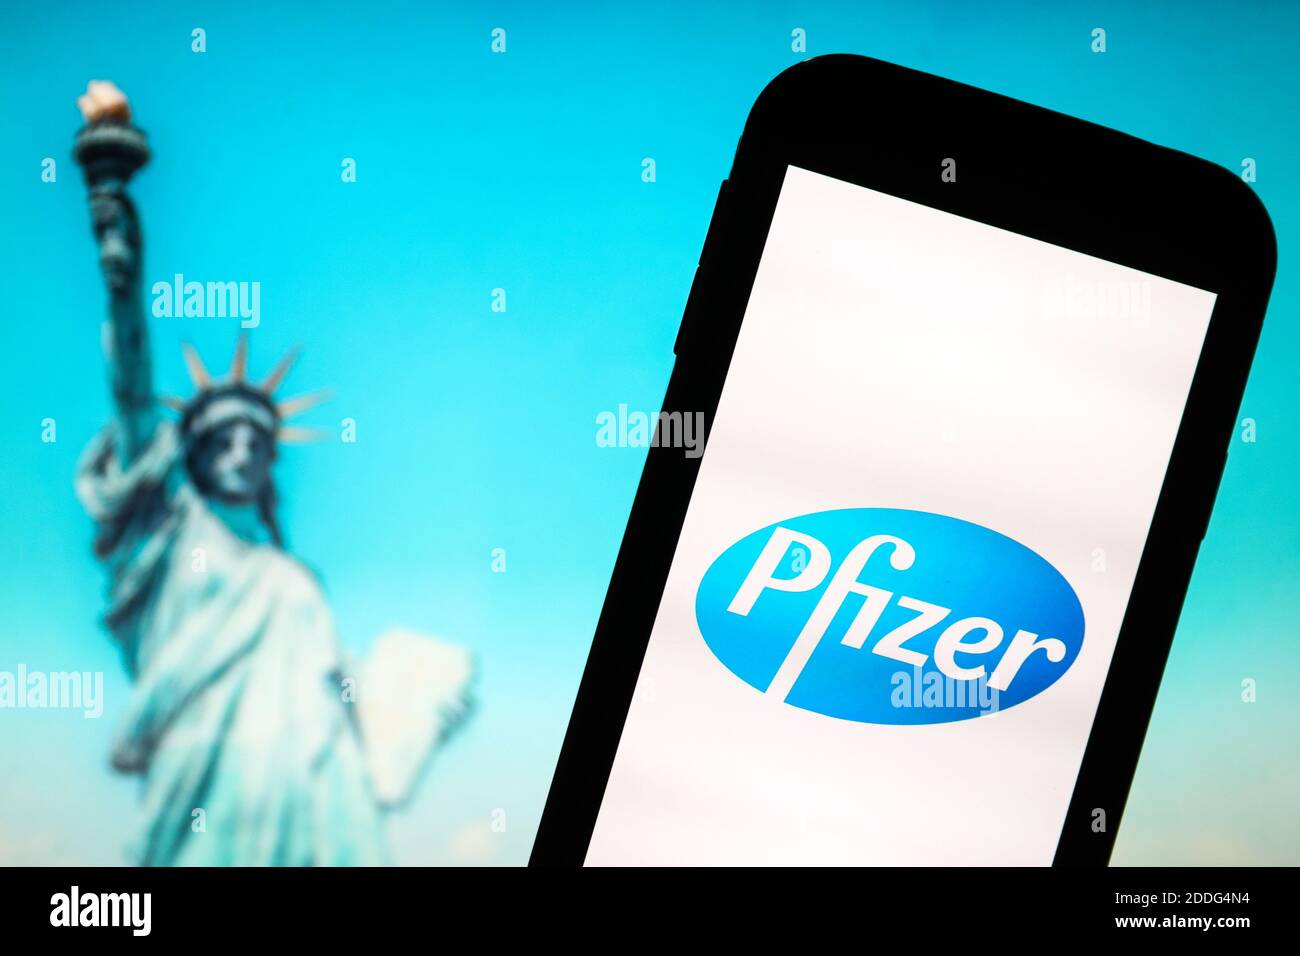 In questa illustrazione fotografica viene visualizzato un logo di Pfizer Pharmaceutical Company sullo smartphone. Foto Stock